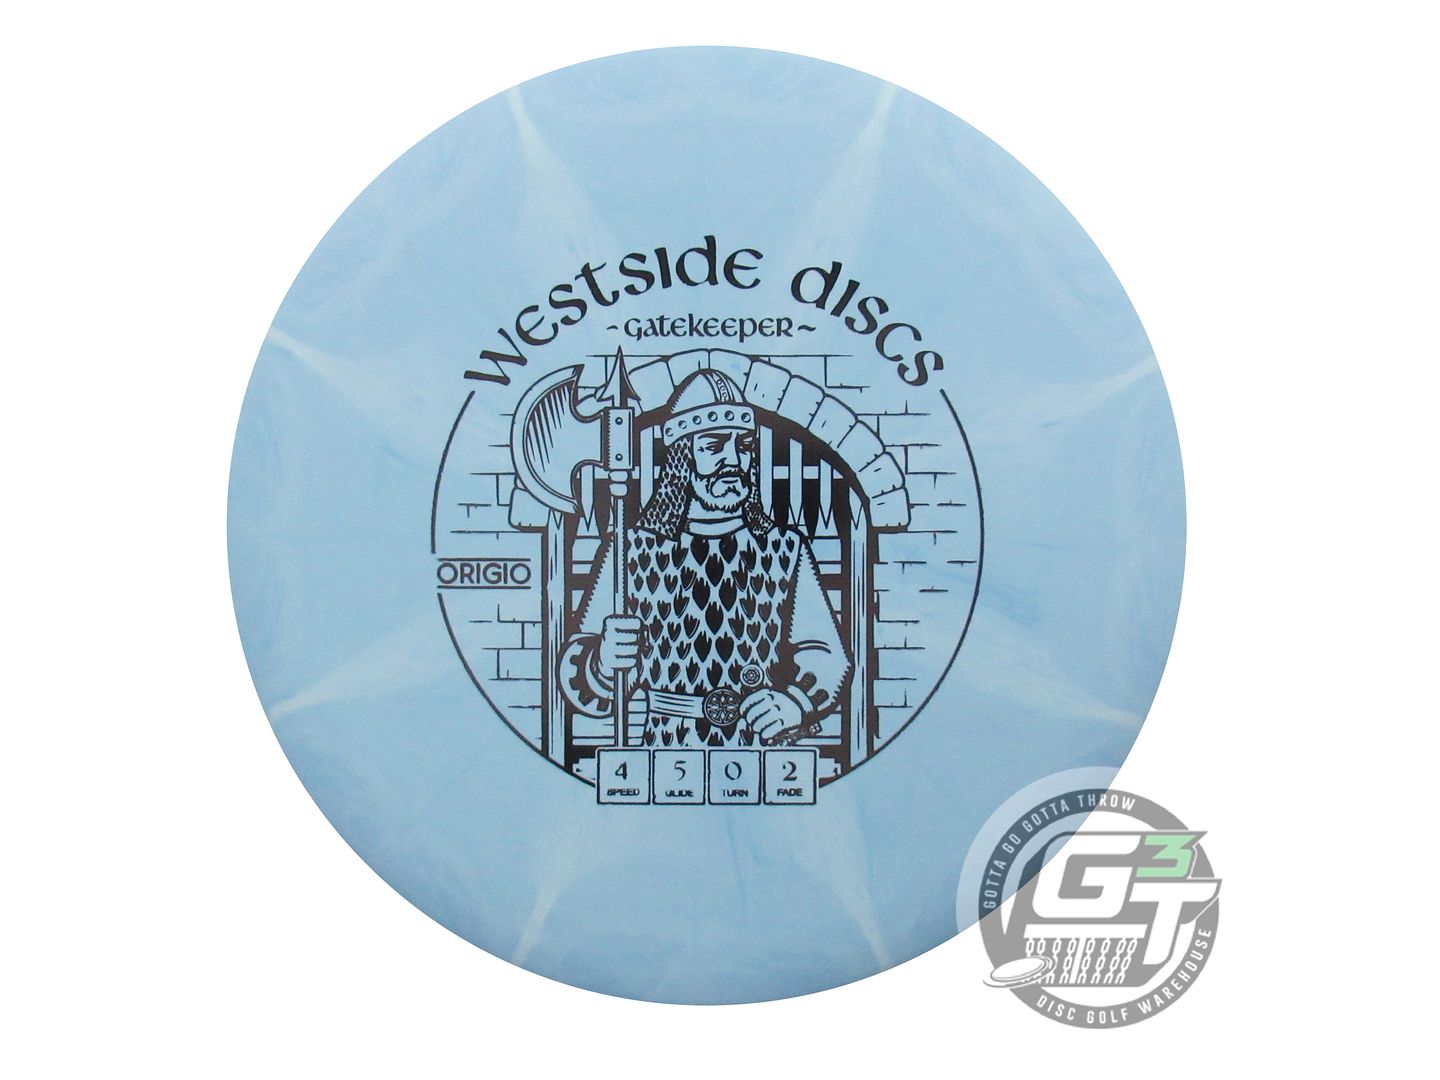 Westside Origio Burst Gatekeeper Midrange Golf Disc (Individually Listed)